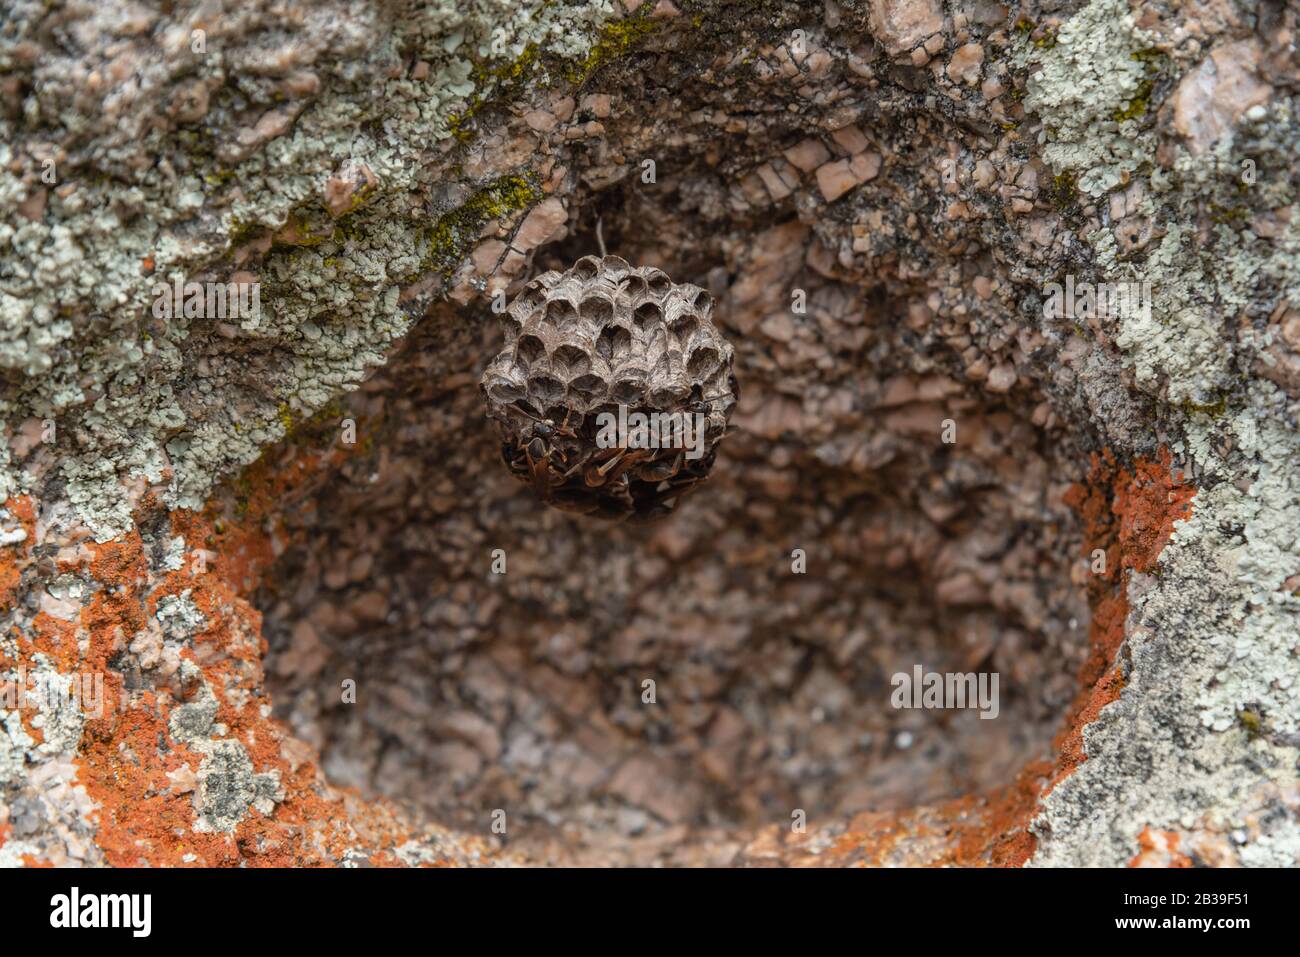 Eine Wespenwabe, mit Wespen arbeitend, hängt zum Schutz an einem bunten, erodierten höhlenförmigen Stein Stockfoto